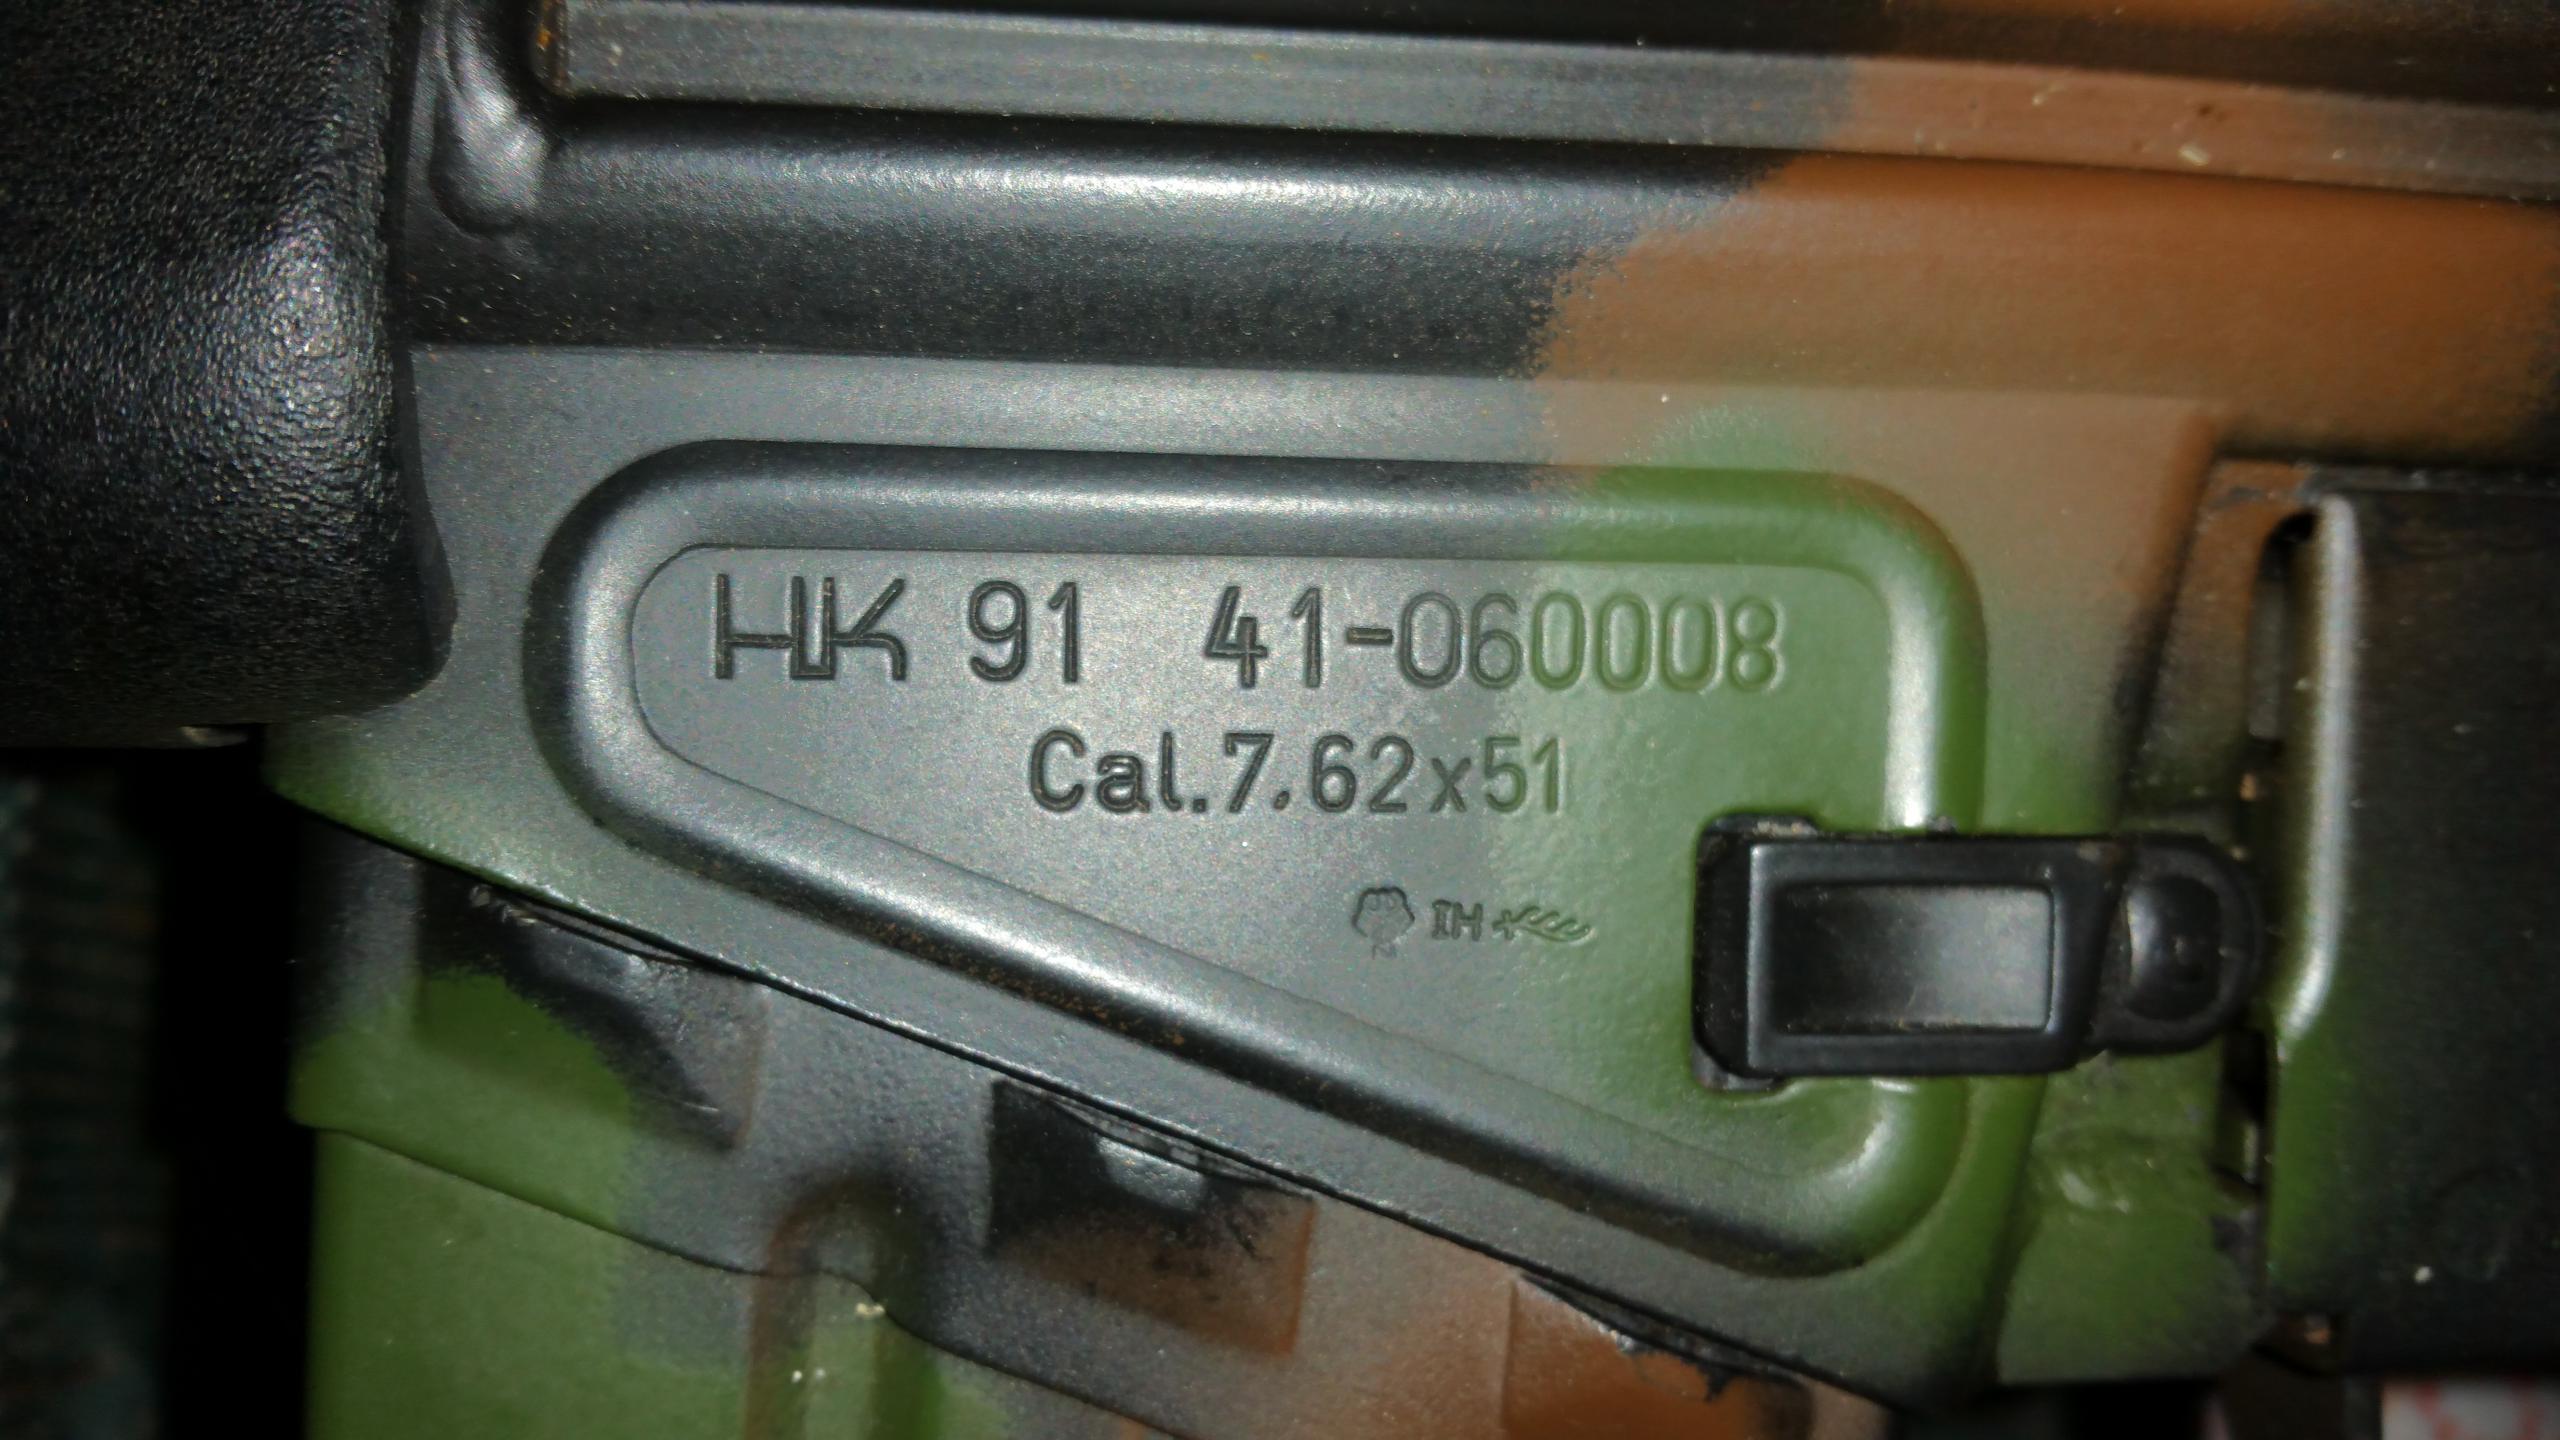 hk 91 serial number lookup